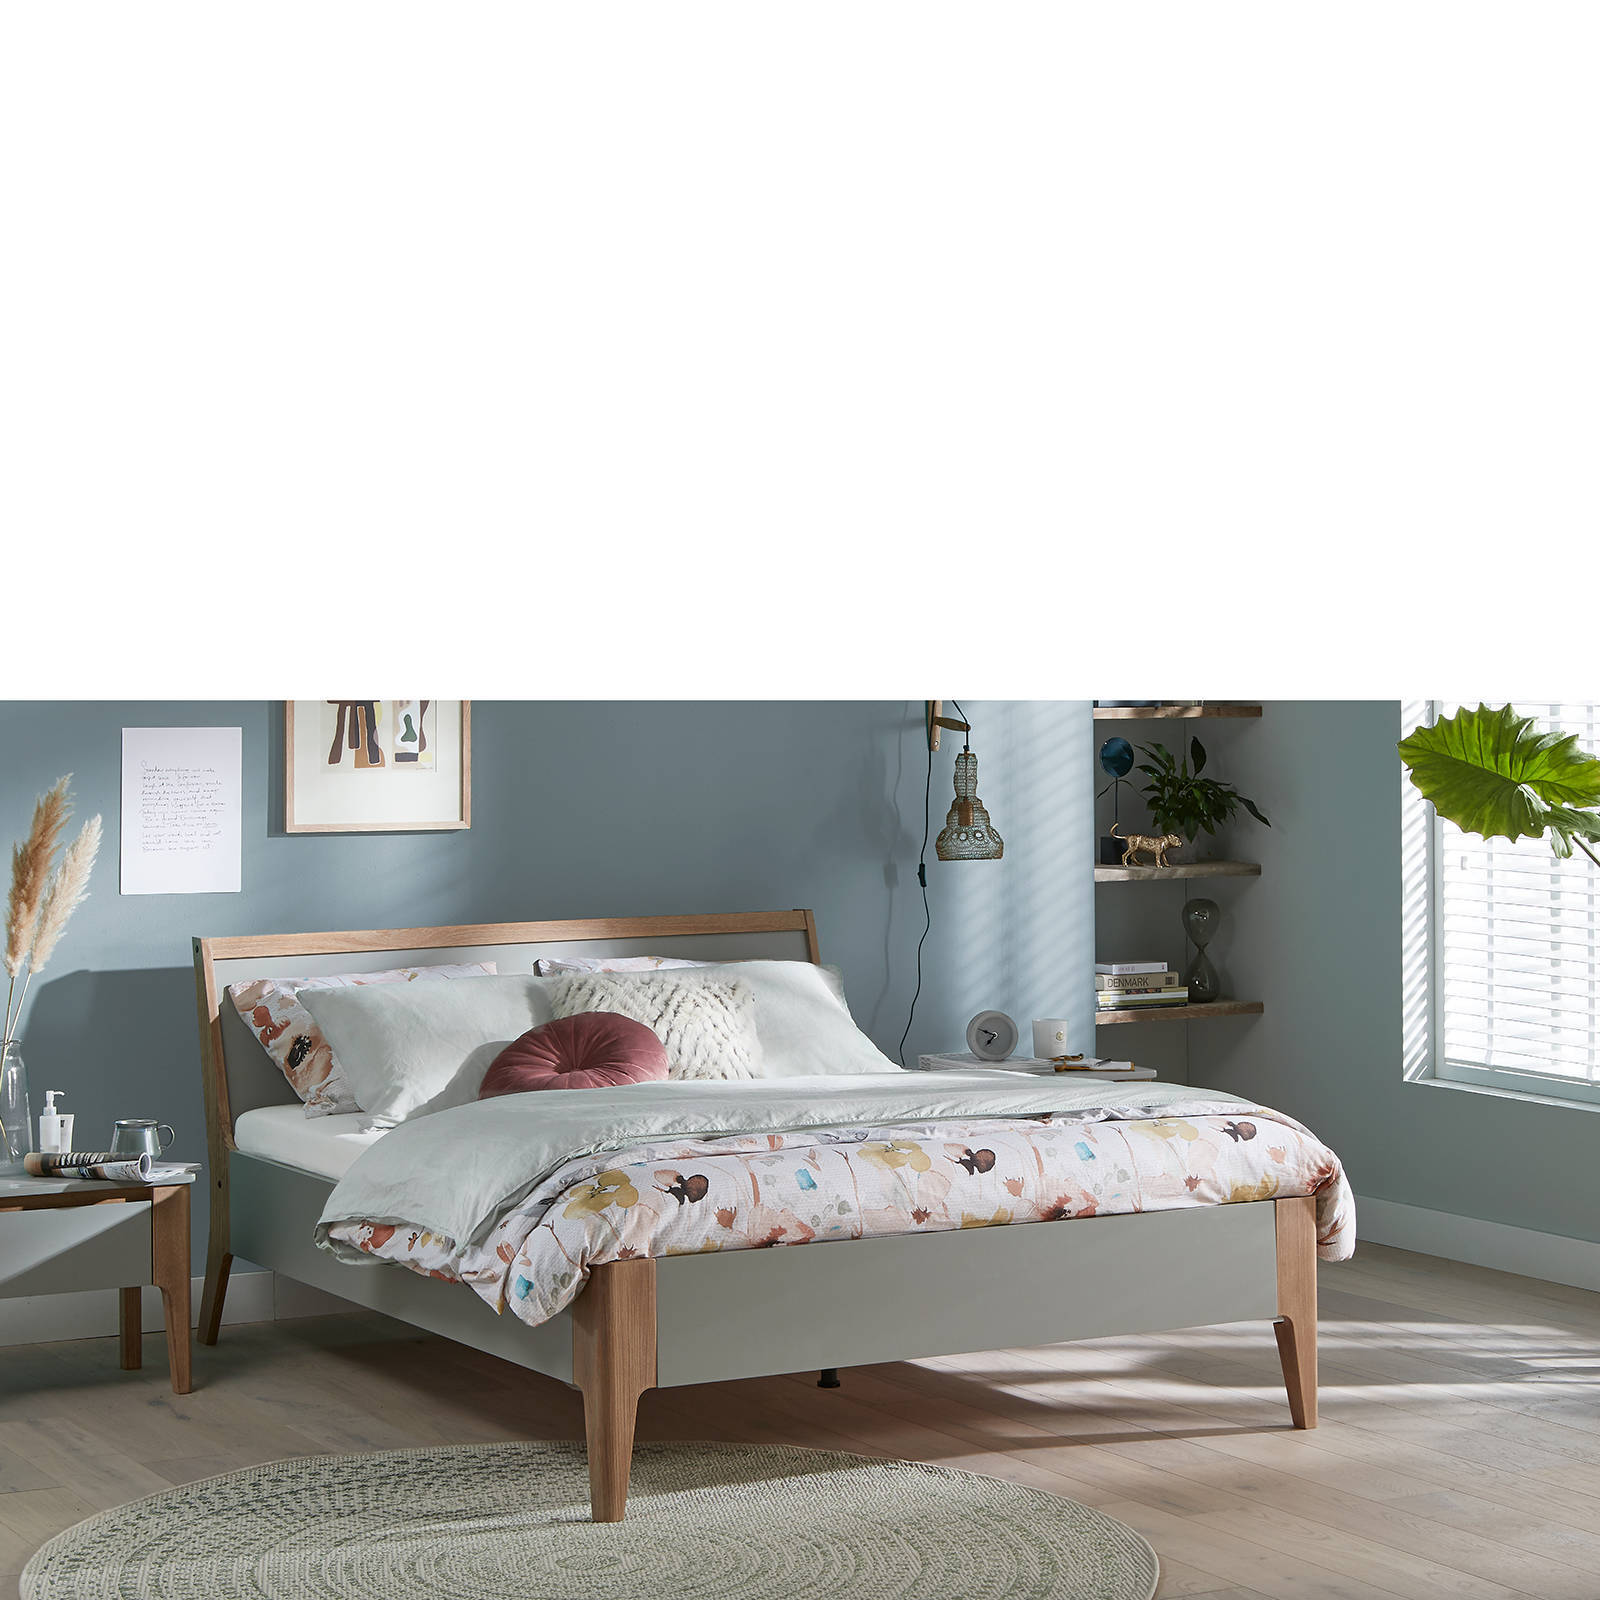 Beter Bed Select Bed Topaz 160 x 200 cm grijs online kopen